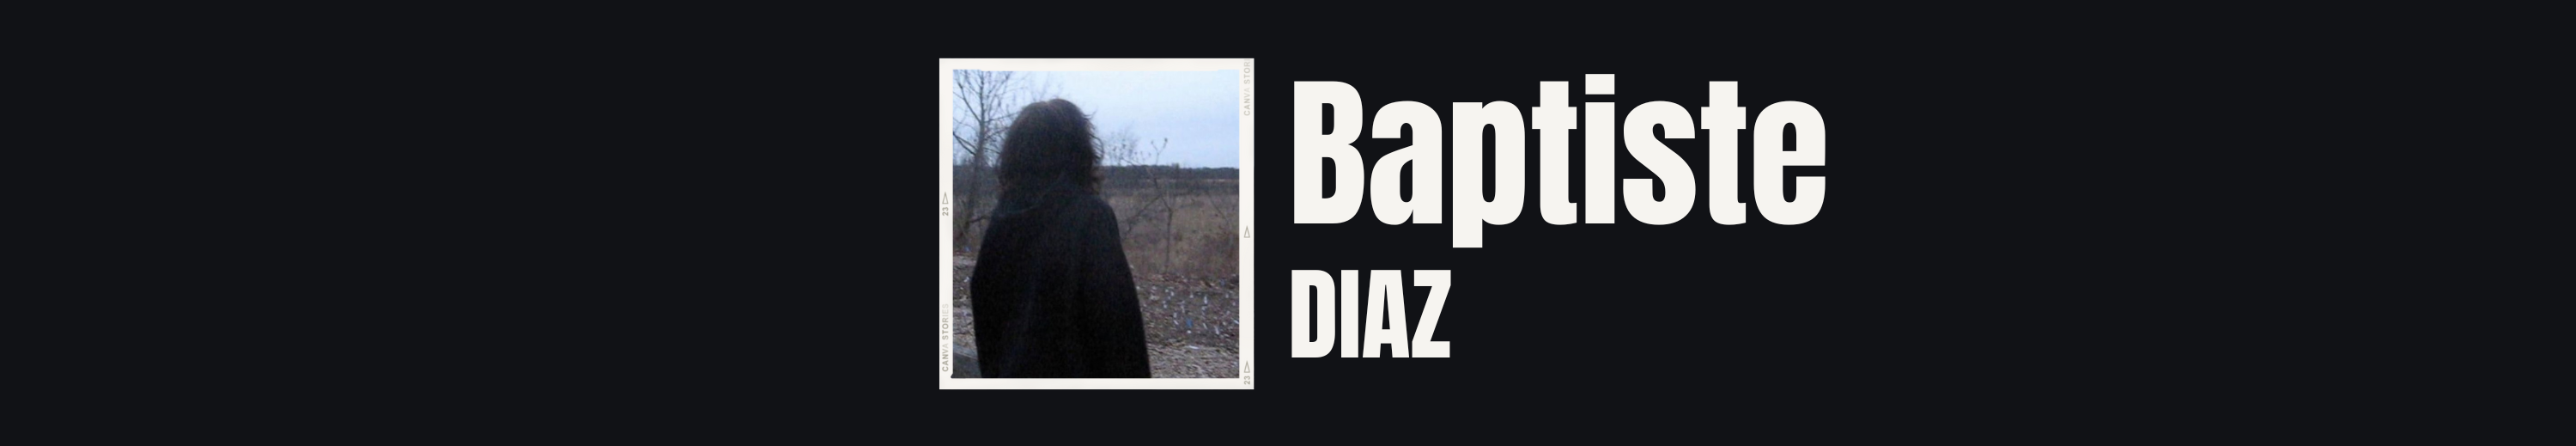 Baptiste Diaz のプロファイルバナー